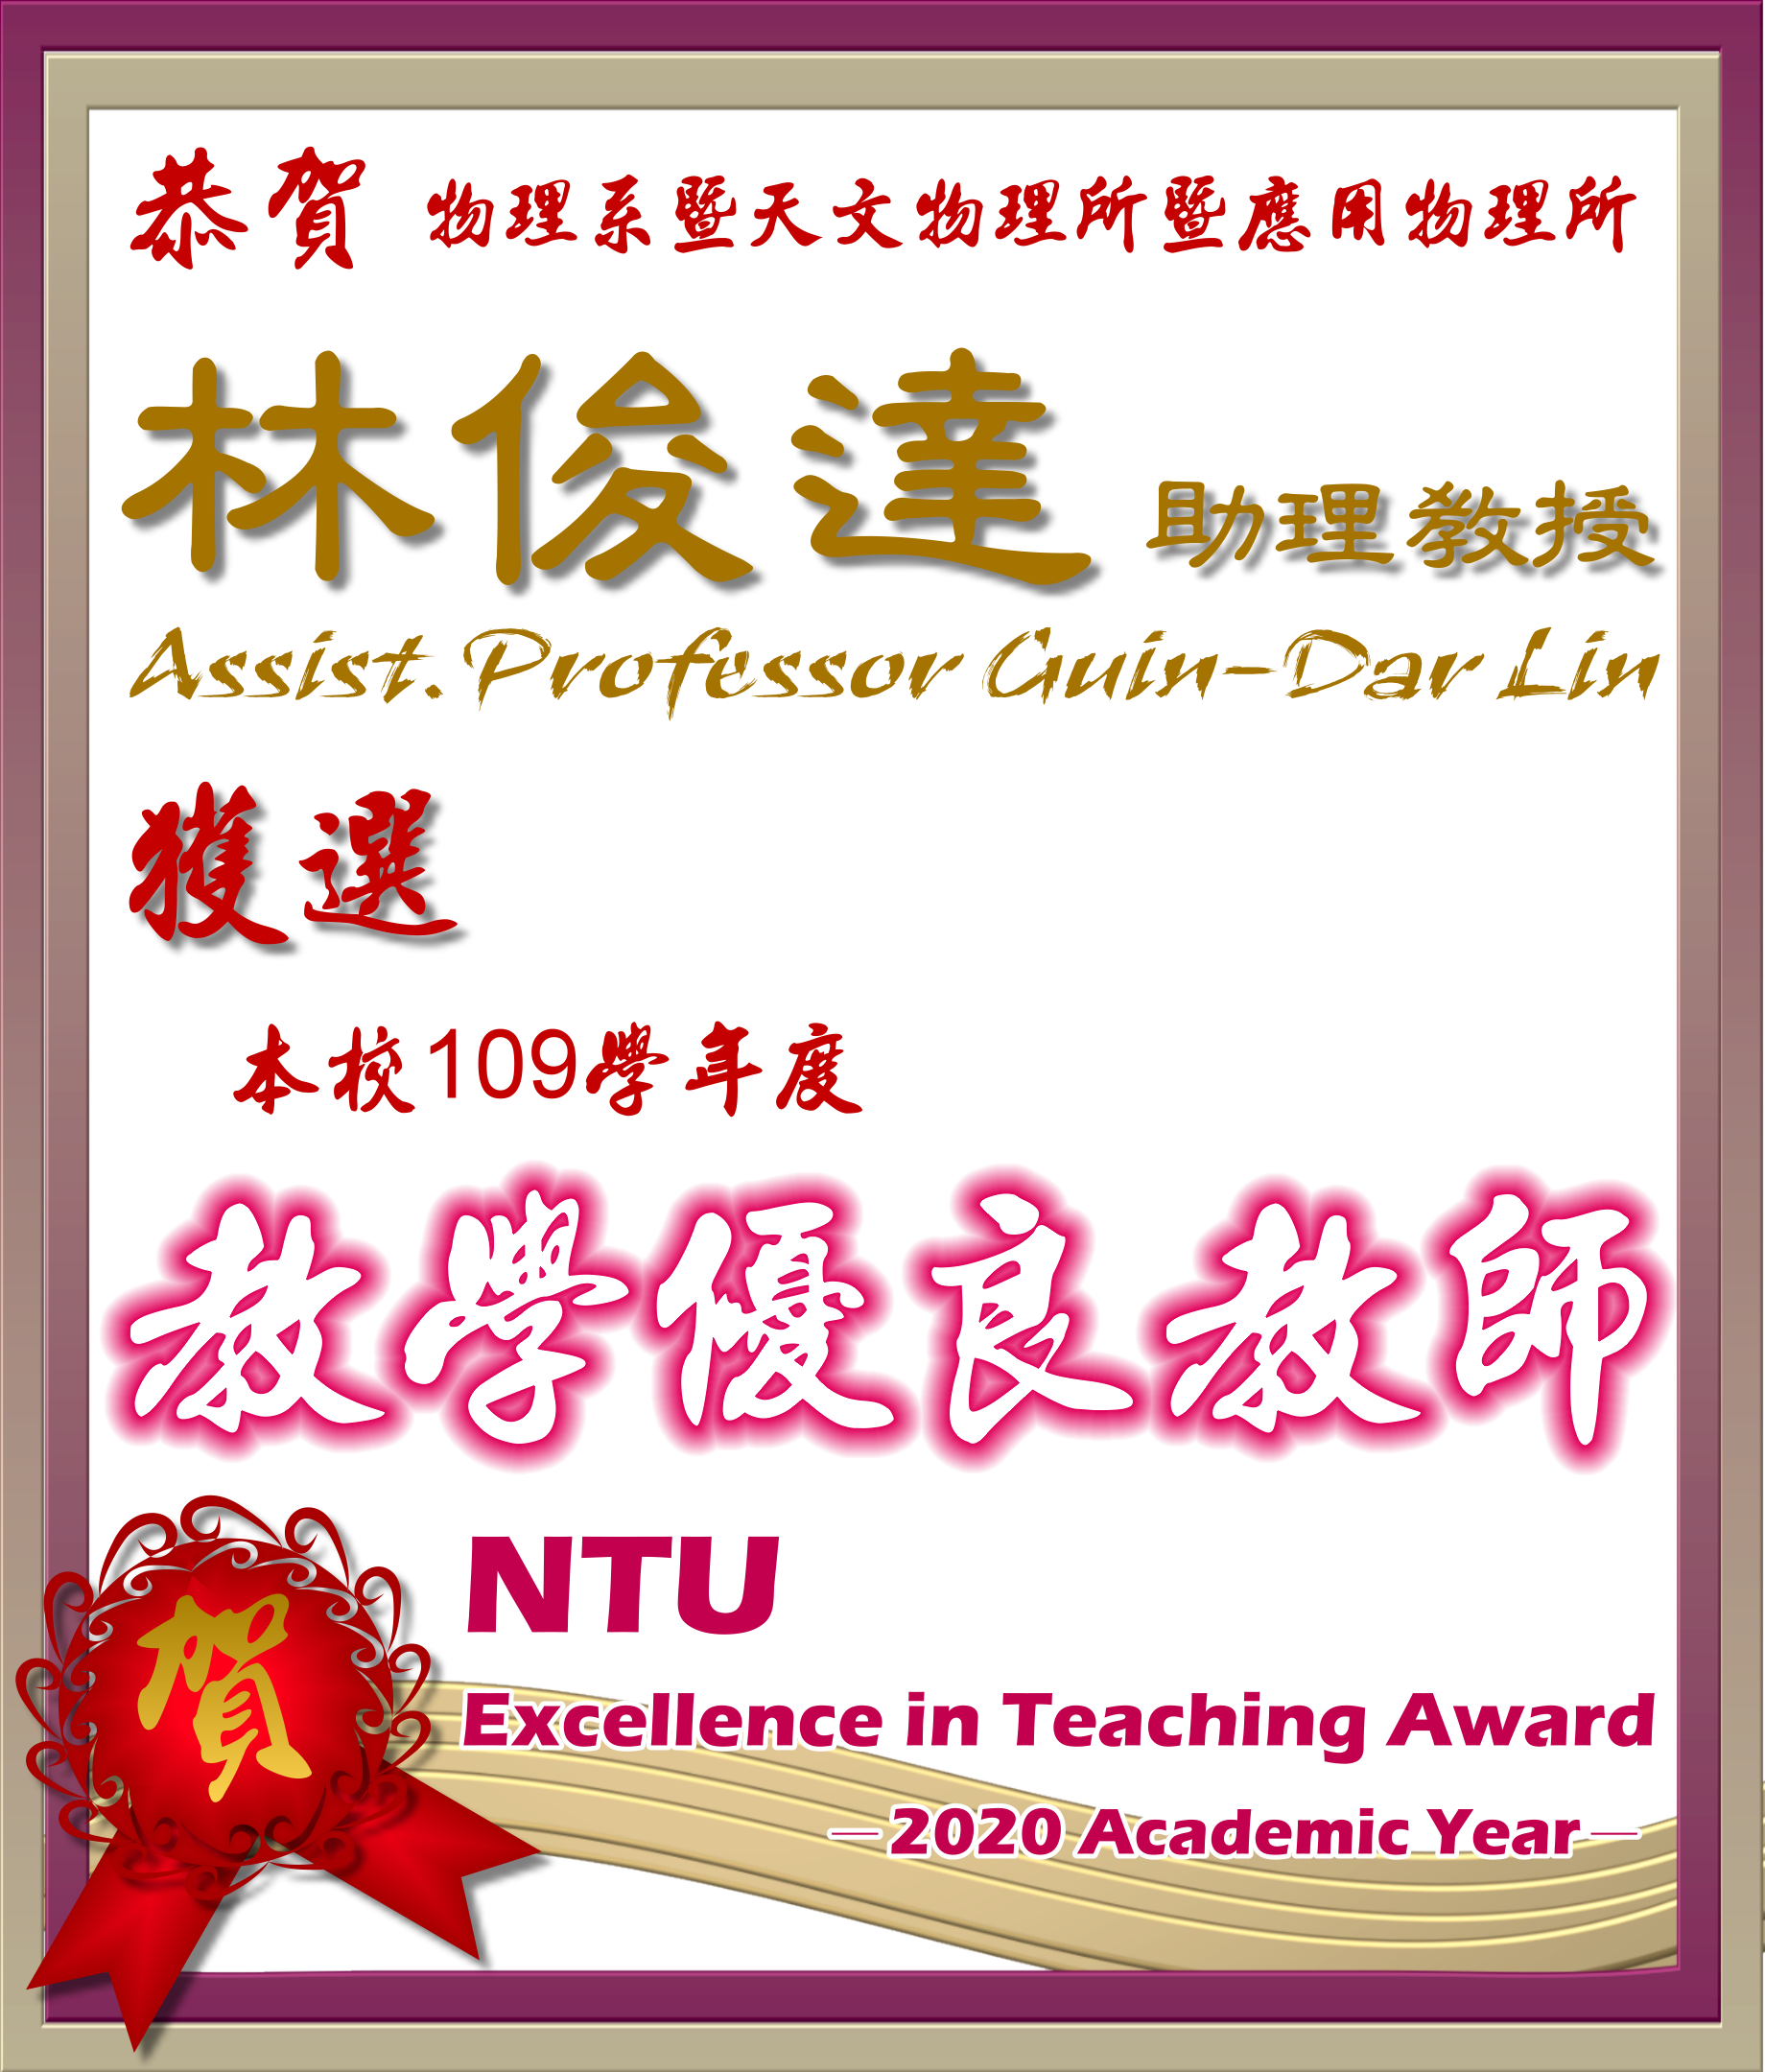 《賀》本系 林俊達 助理教授Prof. Guin-Dar Lin 獲選 109學年度《教學優良教師》(NTU Excellence in Teaching Award)